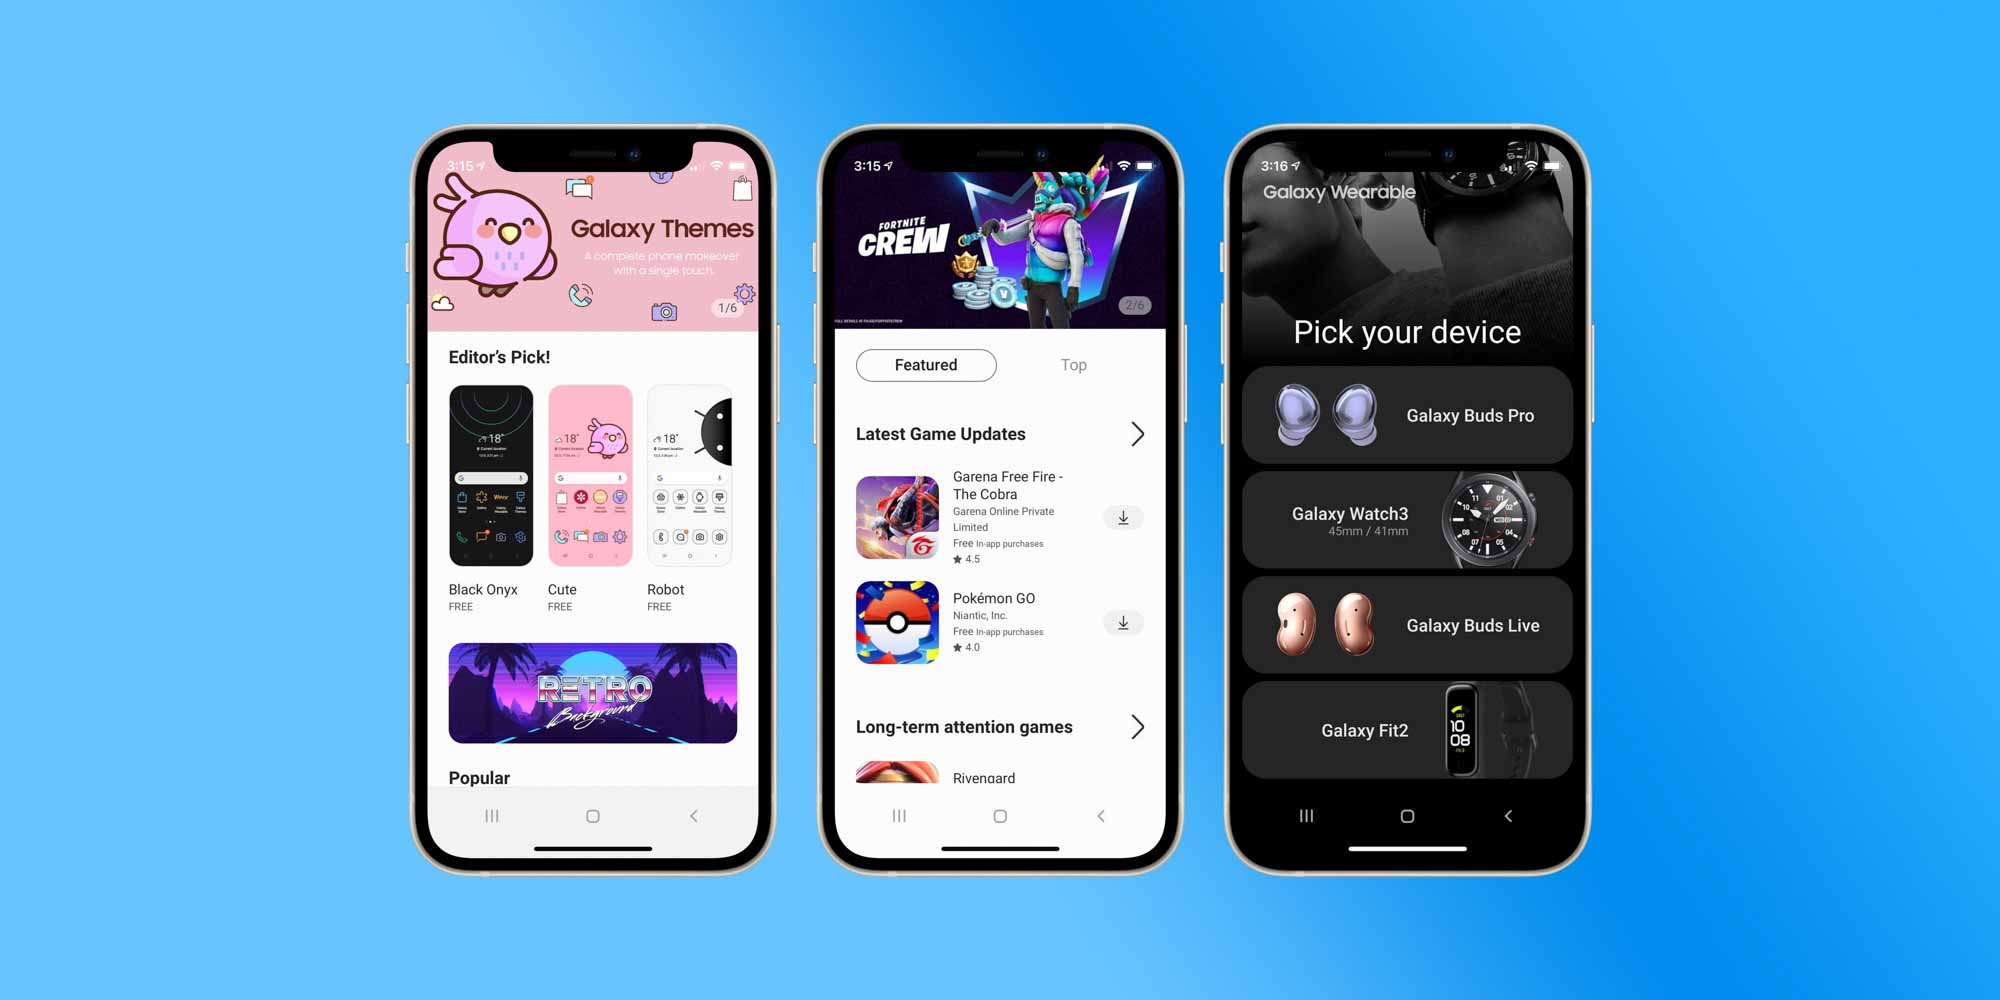 Samsung запускает iTest, новое веб-приложение для превращения вашего iPhone в устройство Galaxy